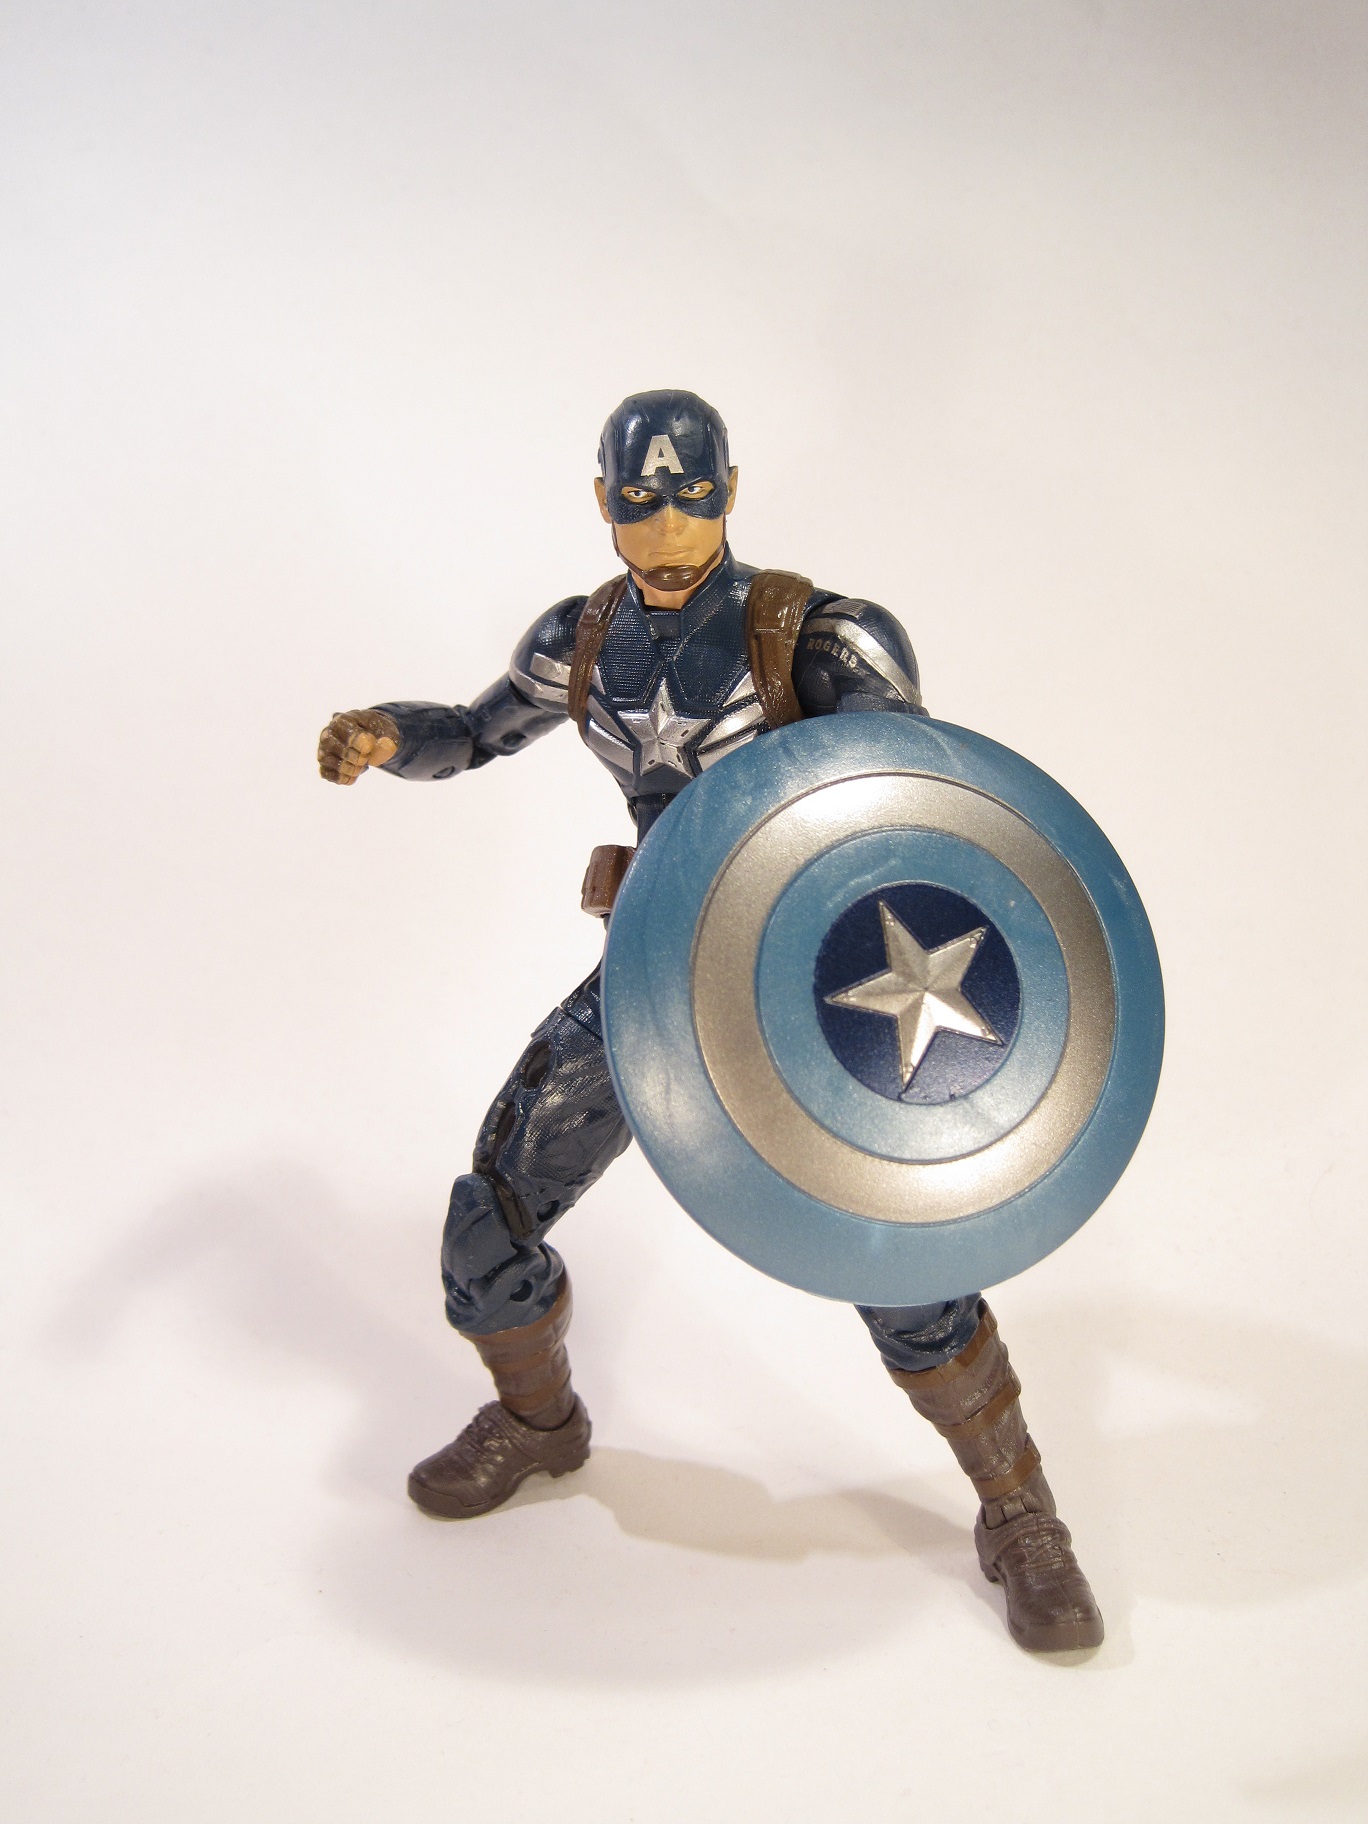 captain america stealth suit action figure